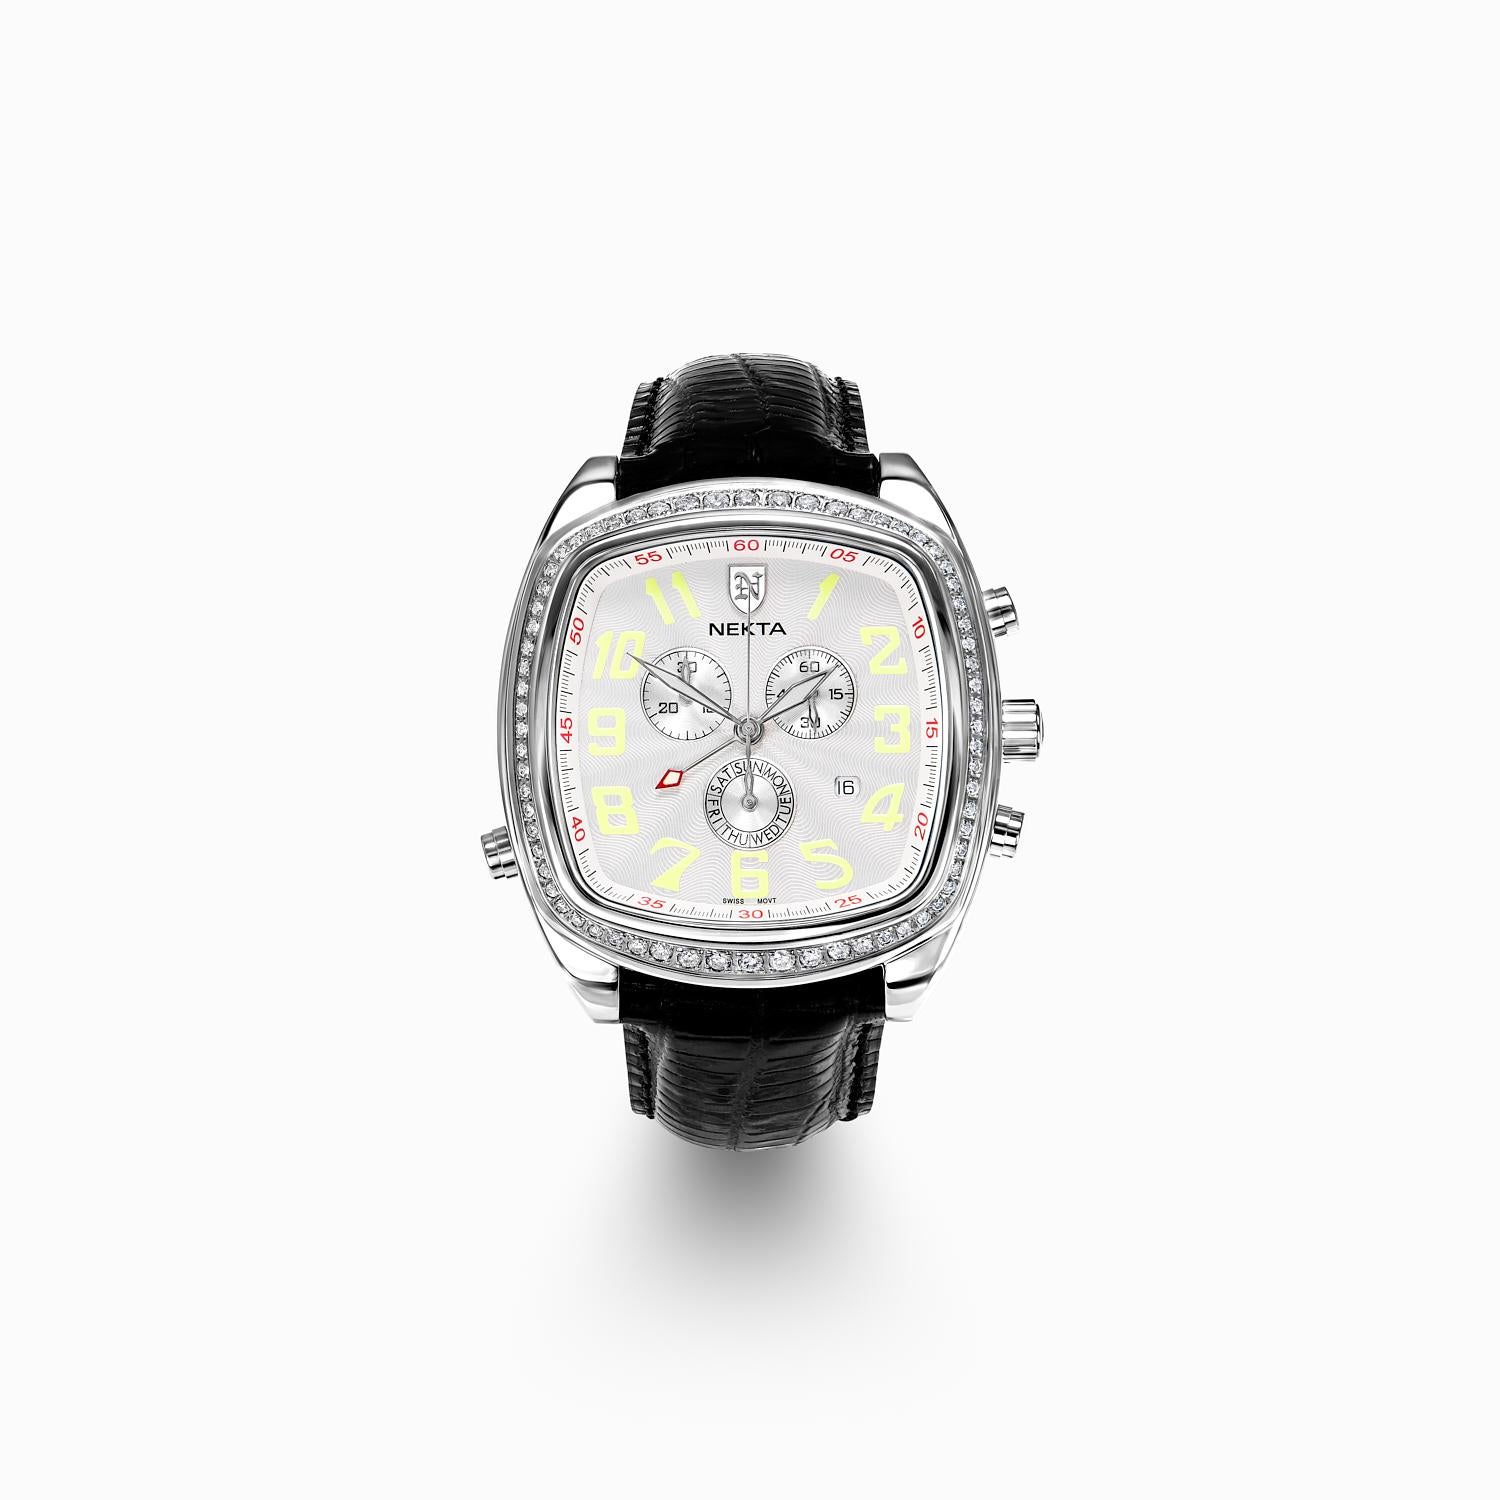 Voici la Nekta Watch : Empire, un véritable chef-d'œuvre de design et d'ingénierie. Cette montre est une production limitée, chaque exemplaire portant un numéro de série unique, ce qui en fait un accessoire vraiment exclusif pour le collectionneur